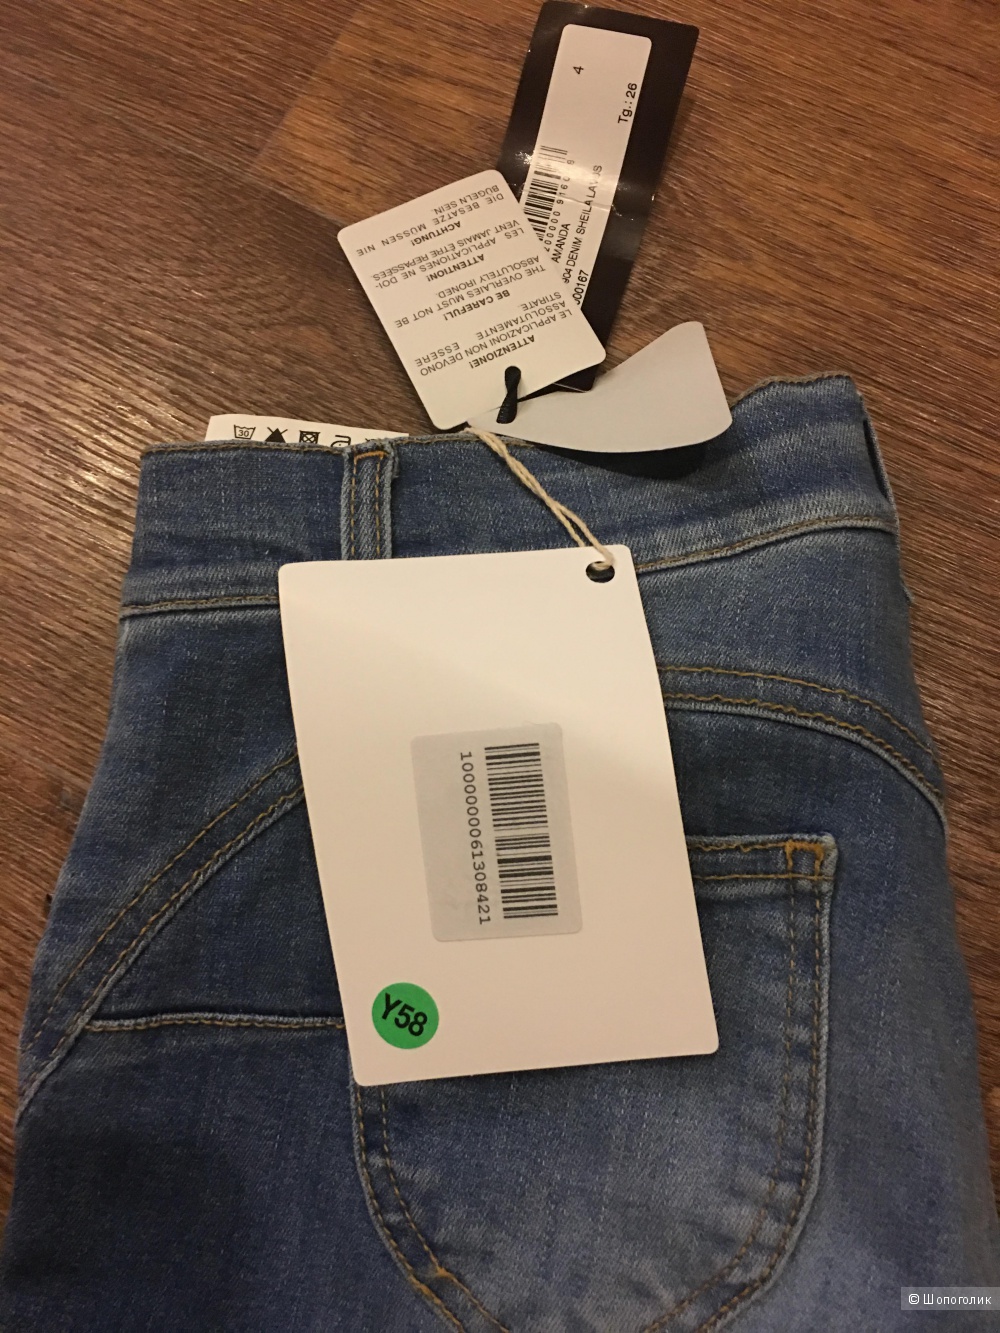 Новые итальянская джинсы byblos 26 размер